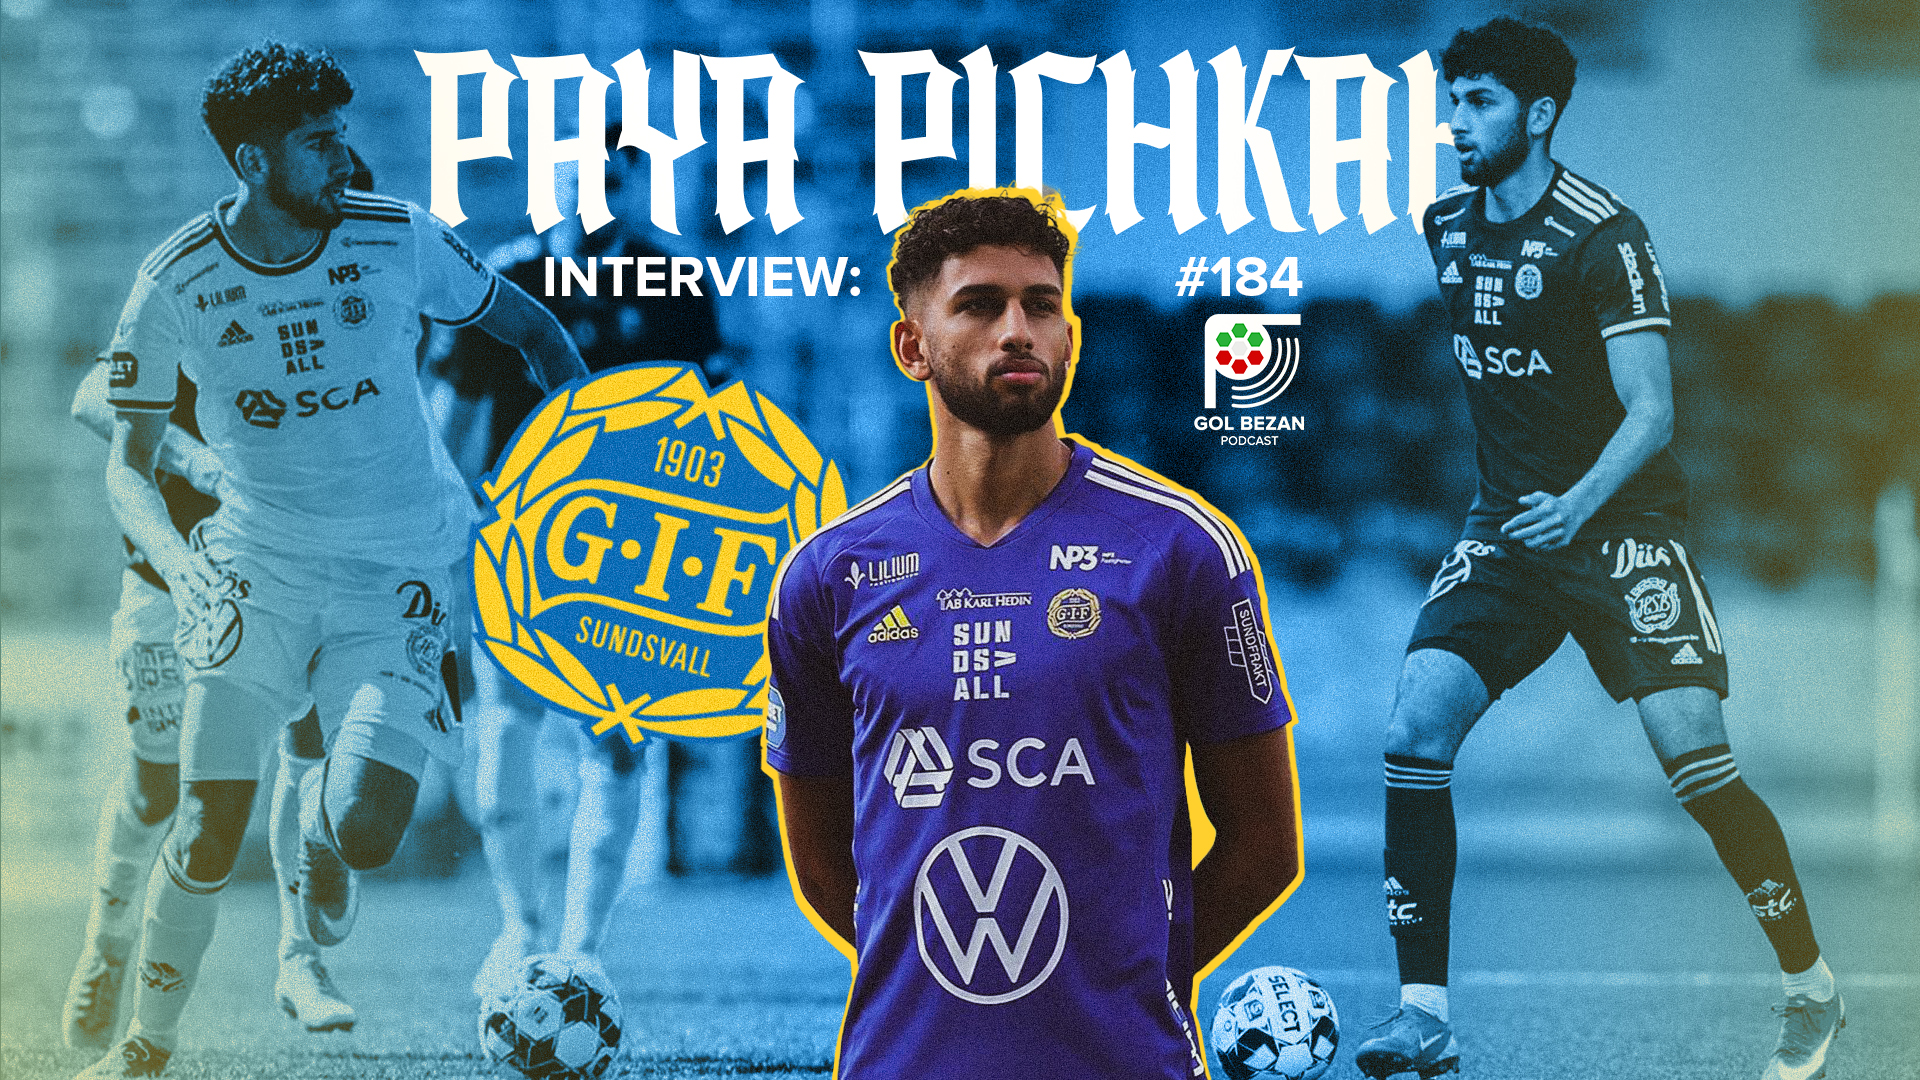 Interview: Paya Pichkah